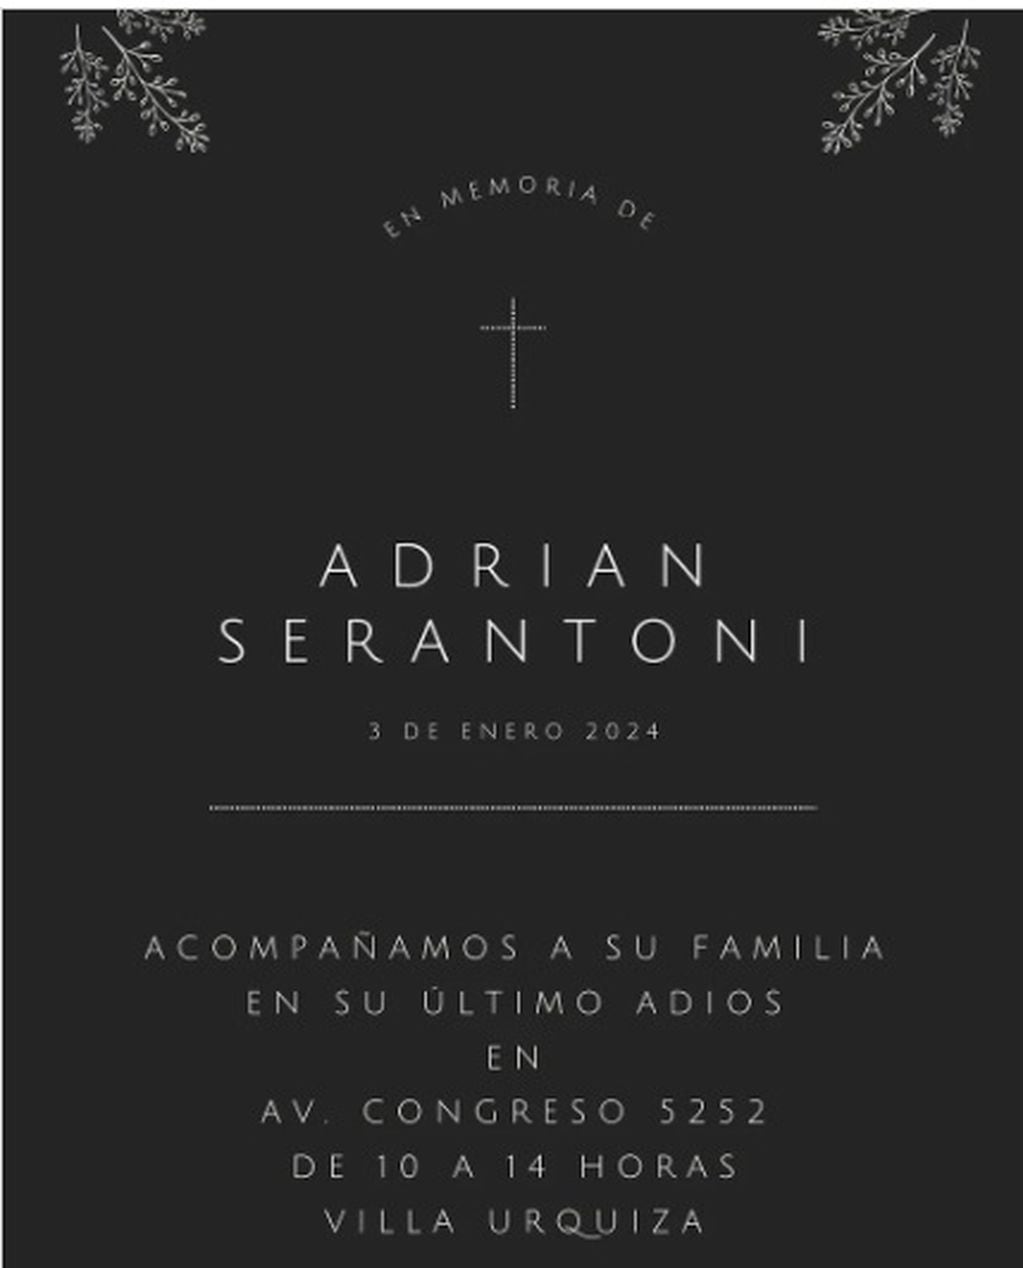 Murió Adrián Serantoni